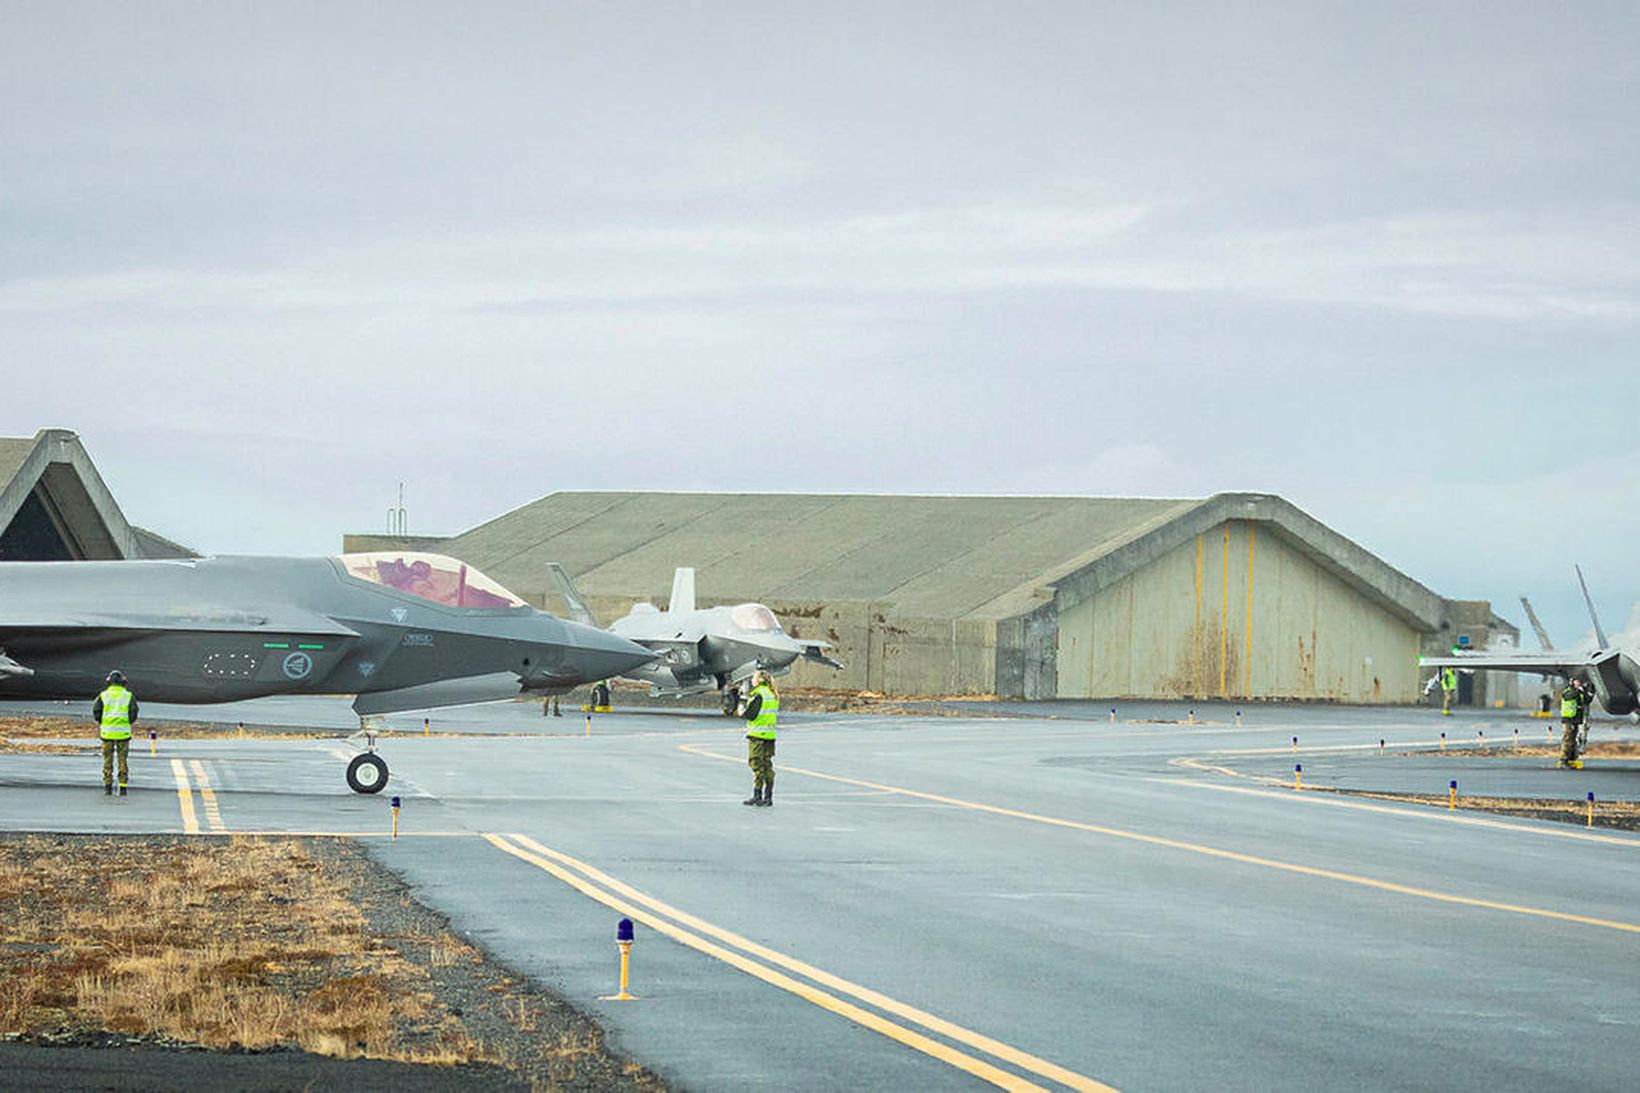 Norskar F-35 orrustuþotur í Keflavík. Í bakgrunni má sjá sprengjuheld …